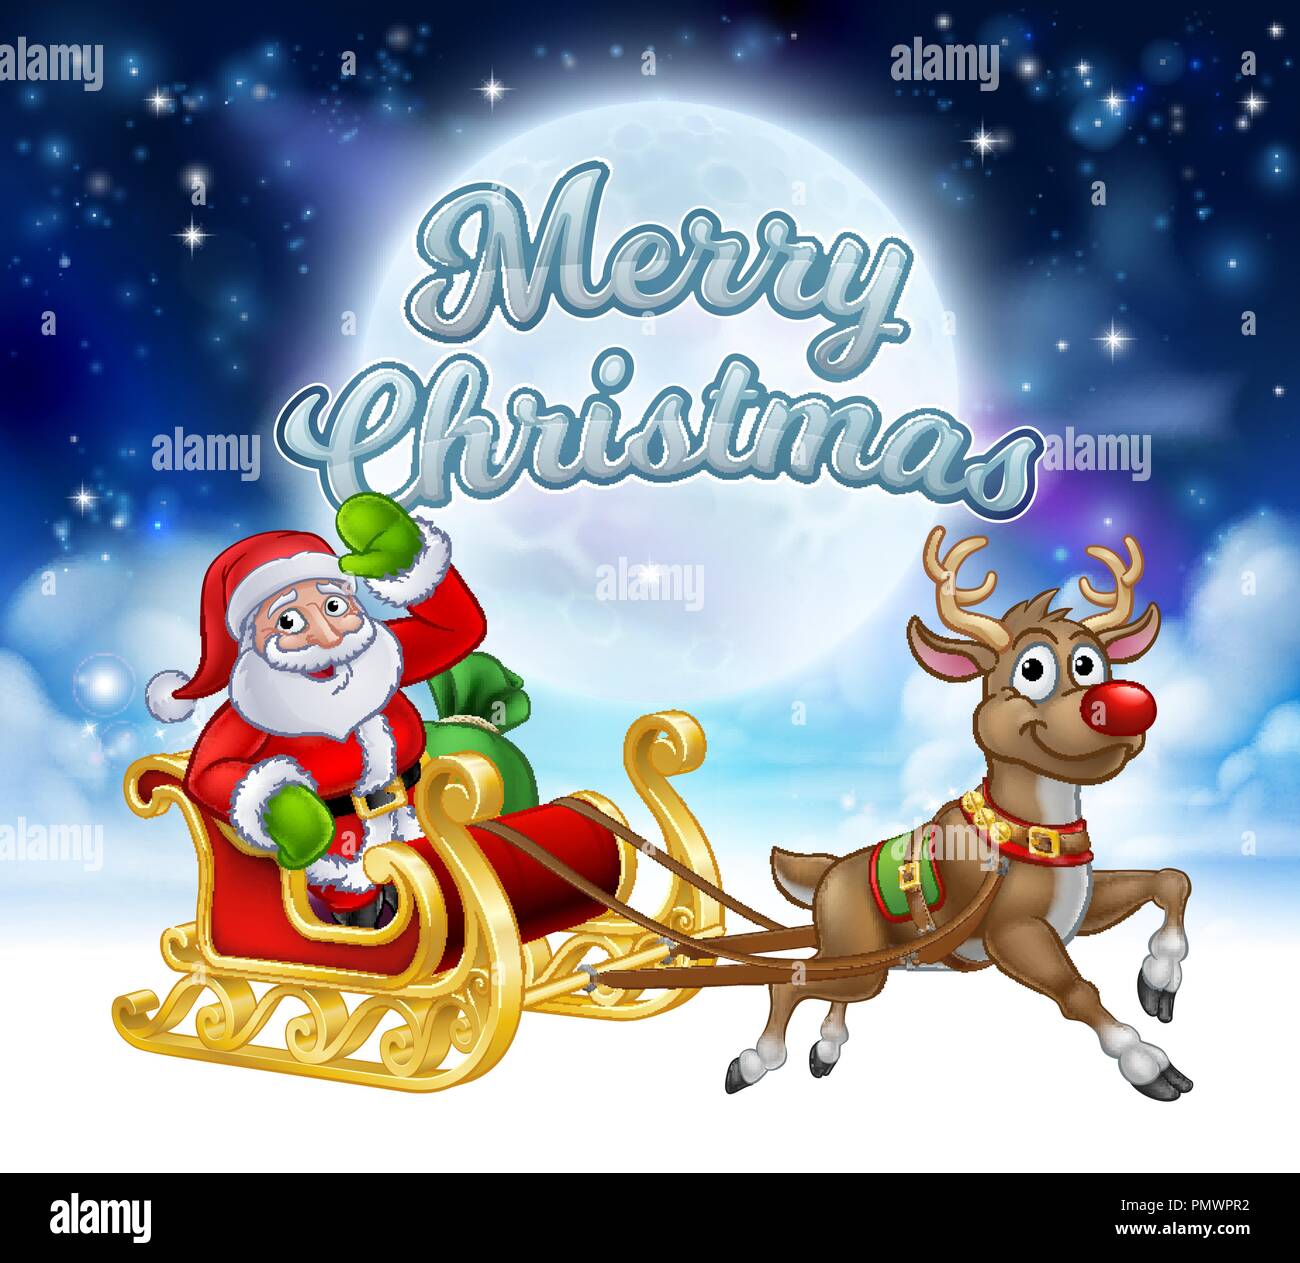 Merry Christmas Santa Sleigh Cartoon Graphic Stock Vector